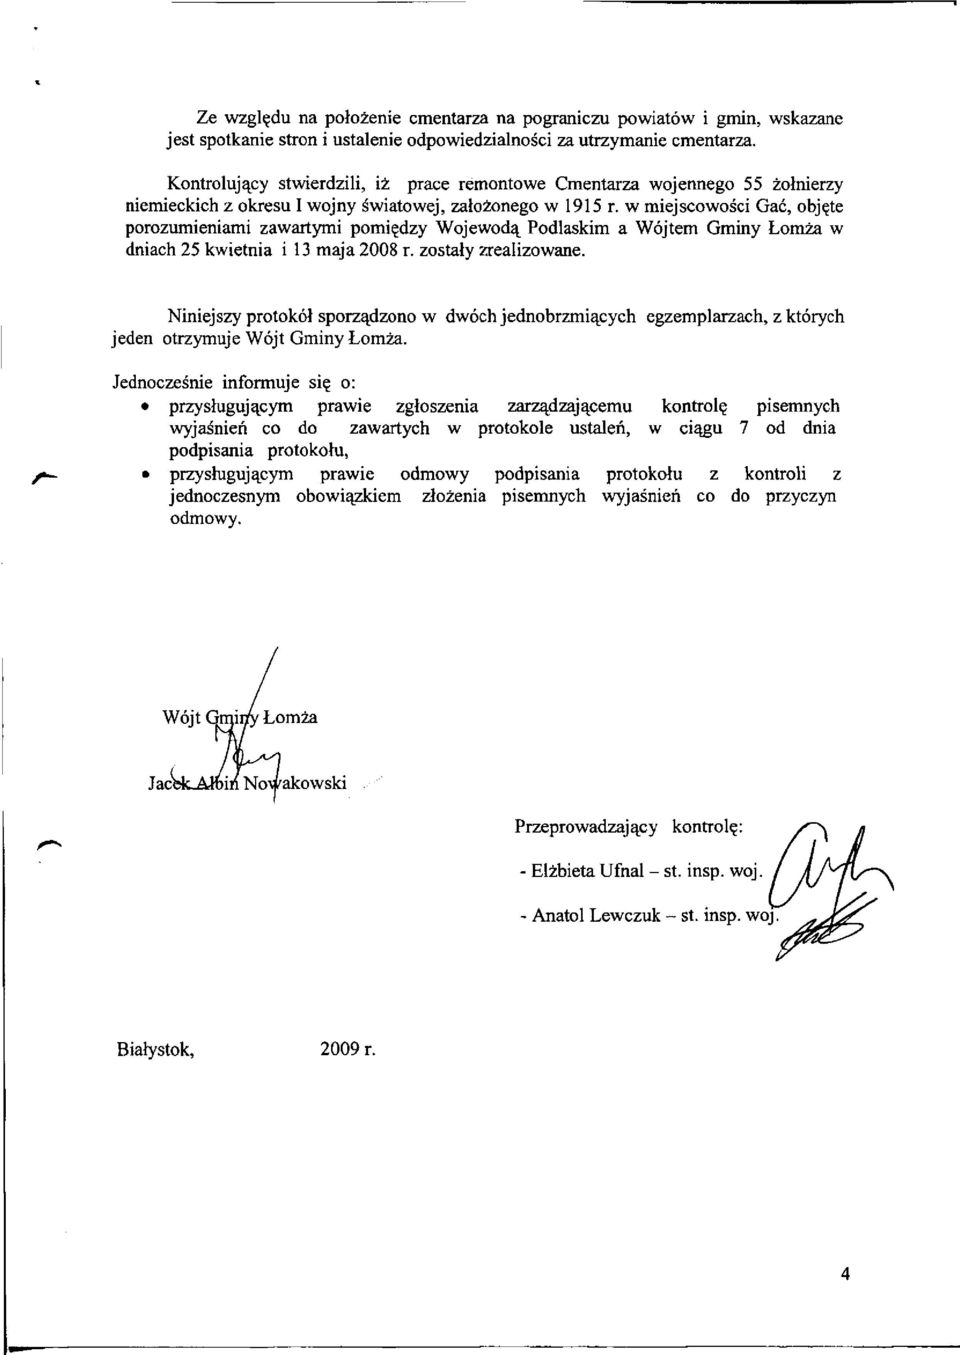 w miejscowości Gać, objęte porozumieniami zawartymi pomiędzy Wojewodą Podlaskim a Wójtem Gminy Łomża w dniach 25 kwietnia i 13 maja 2008 r. zostały zrealizowane.